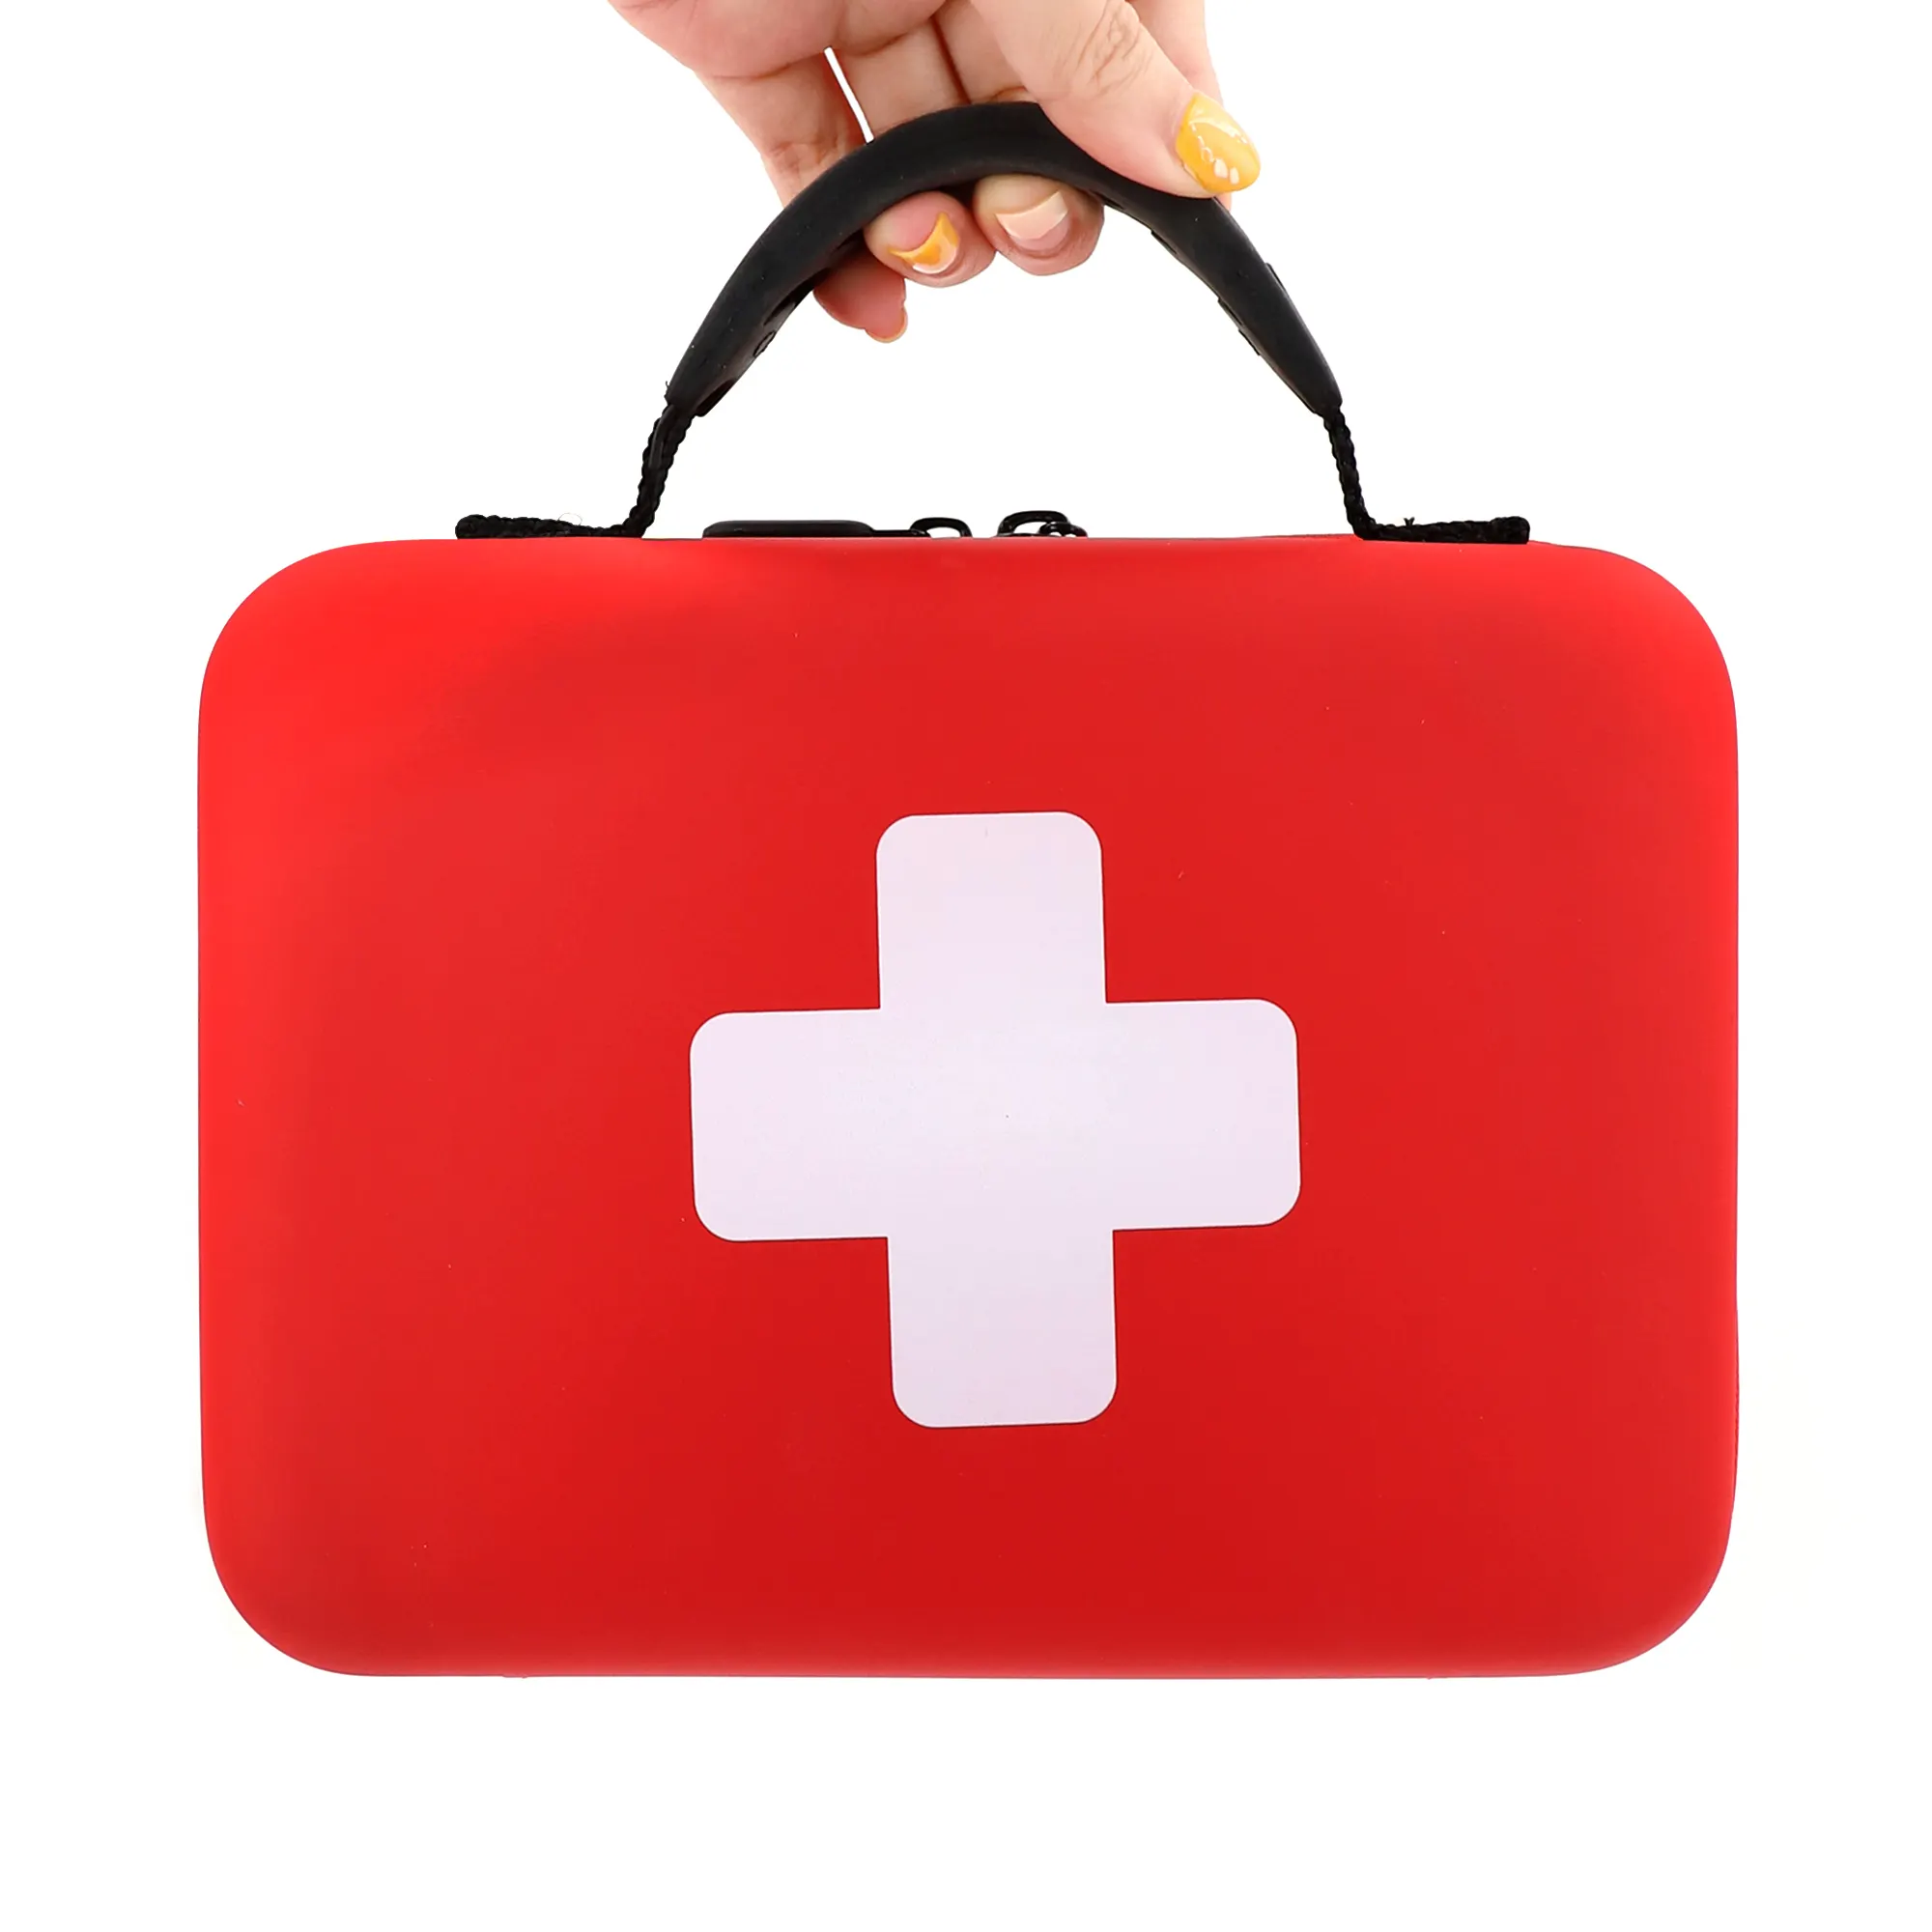 OEM מותאם אישית בריאות בית חירום רפואי ציוד נייד נסיעות הישרדות פלסטיק ריק עץ ערכת עזרה הראשונה תיבת תיק